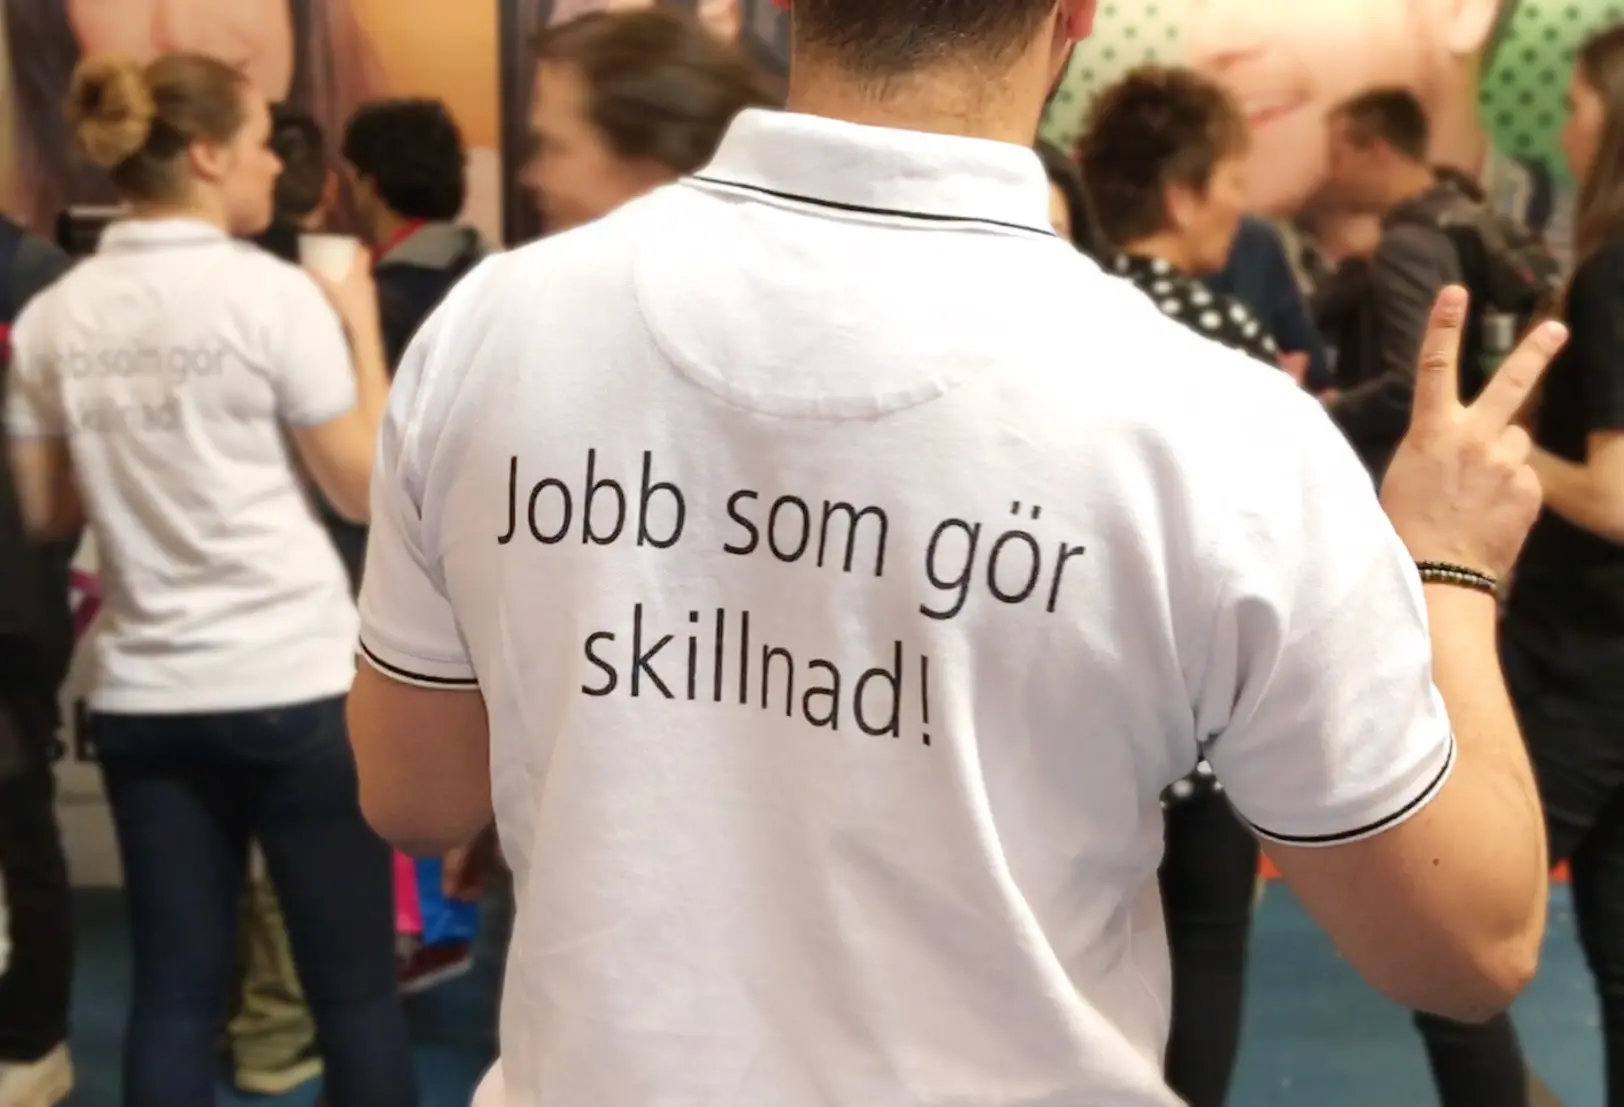 Ryggen på en anställd på rekryteringsmässan där texten "Jobb som gör skillnad" står i svart text på den vita t-shirten.